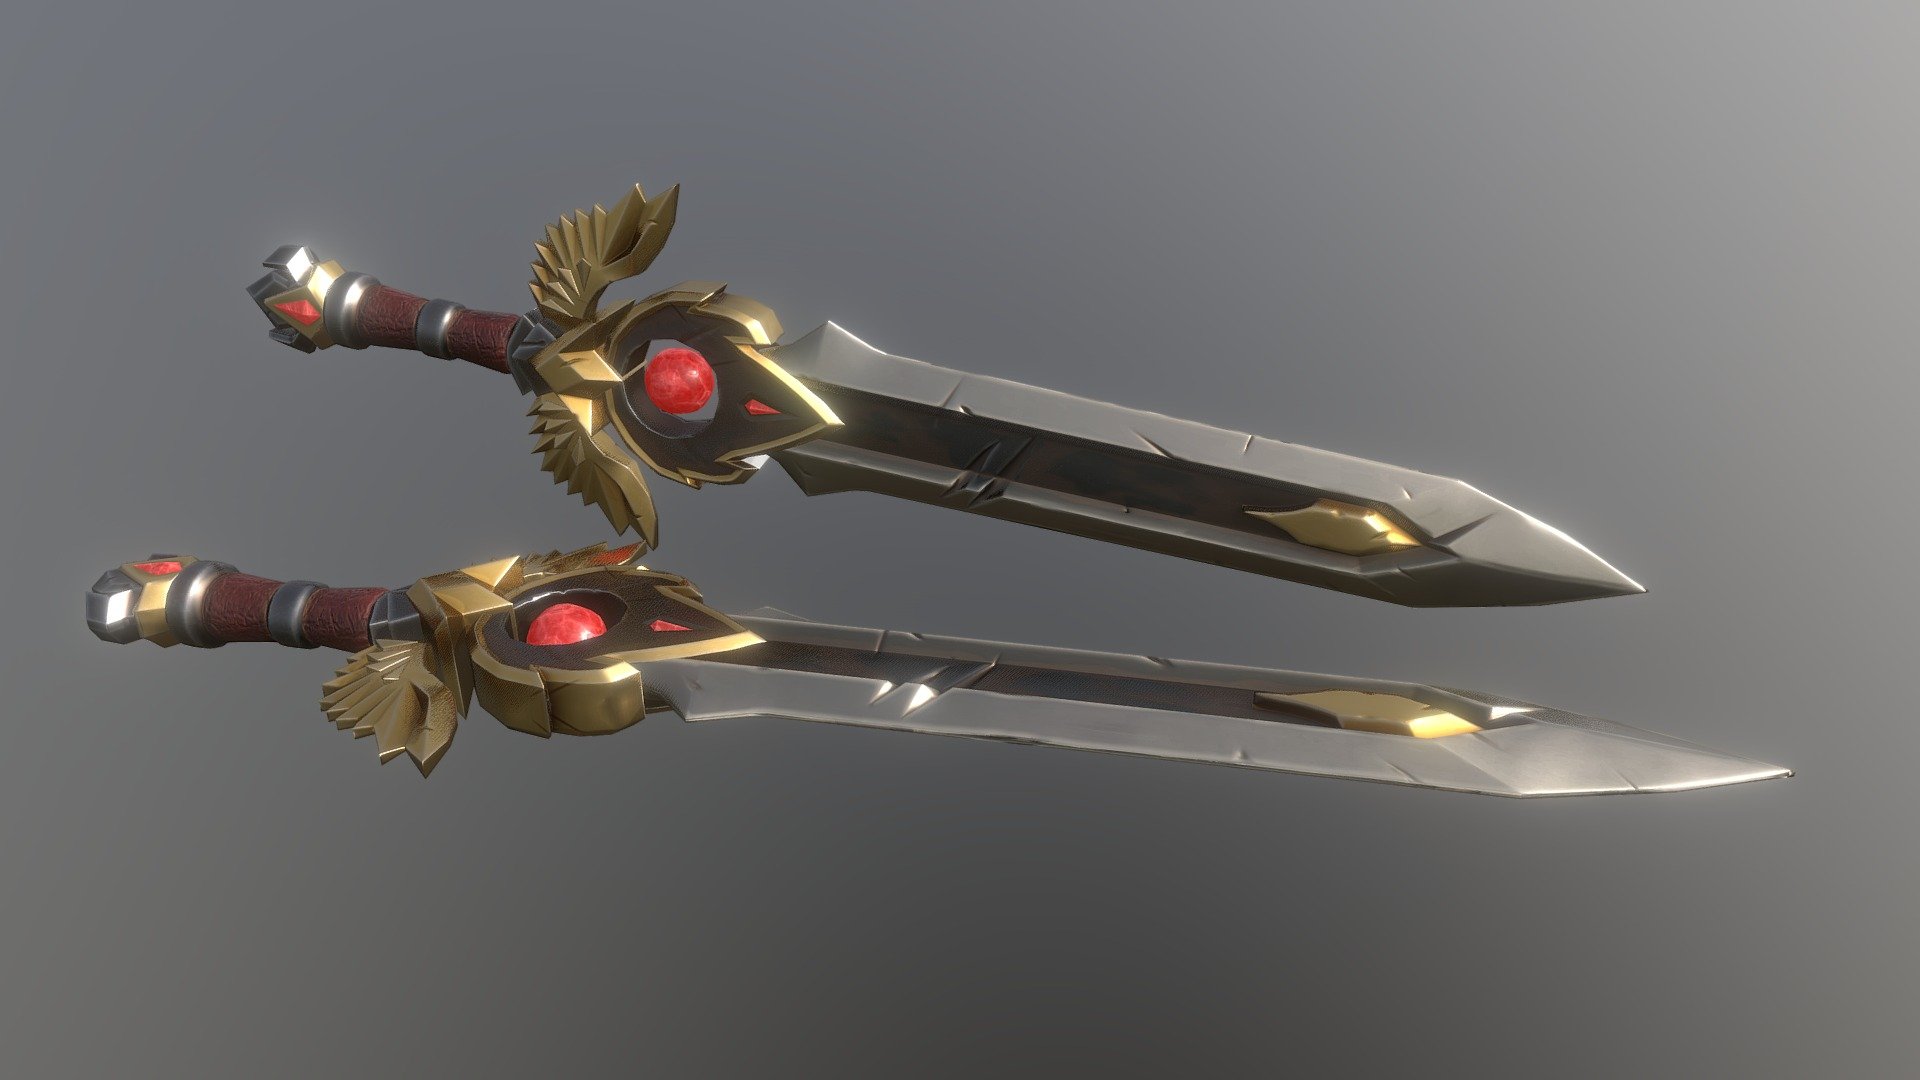 2k Textures, 5k tris

Renders: https://www.artstation.com/artwork/xJn1kW - Stylized sword - Download Free 3D model by Diamonddogkz 3d model